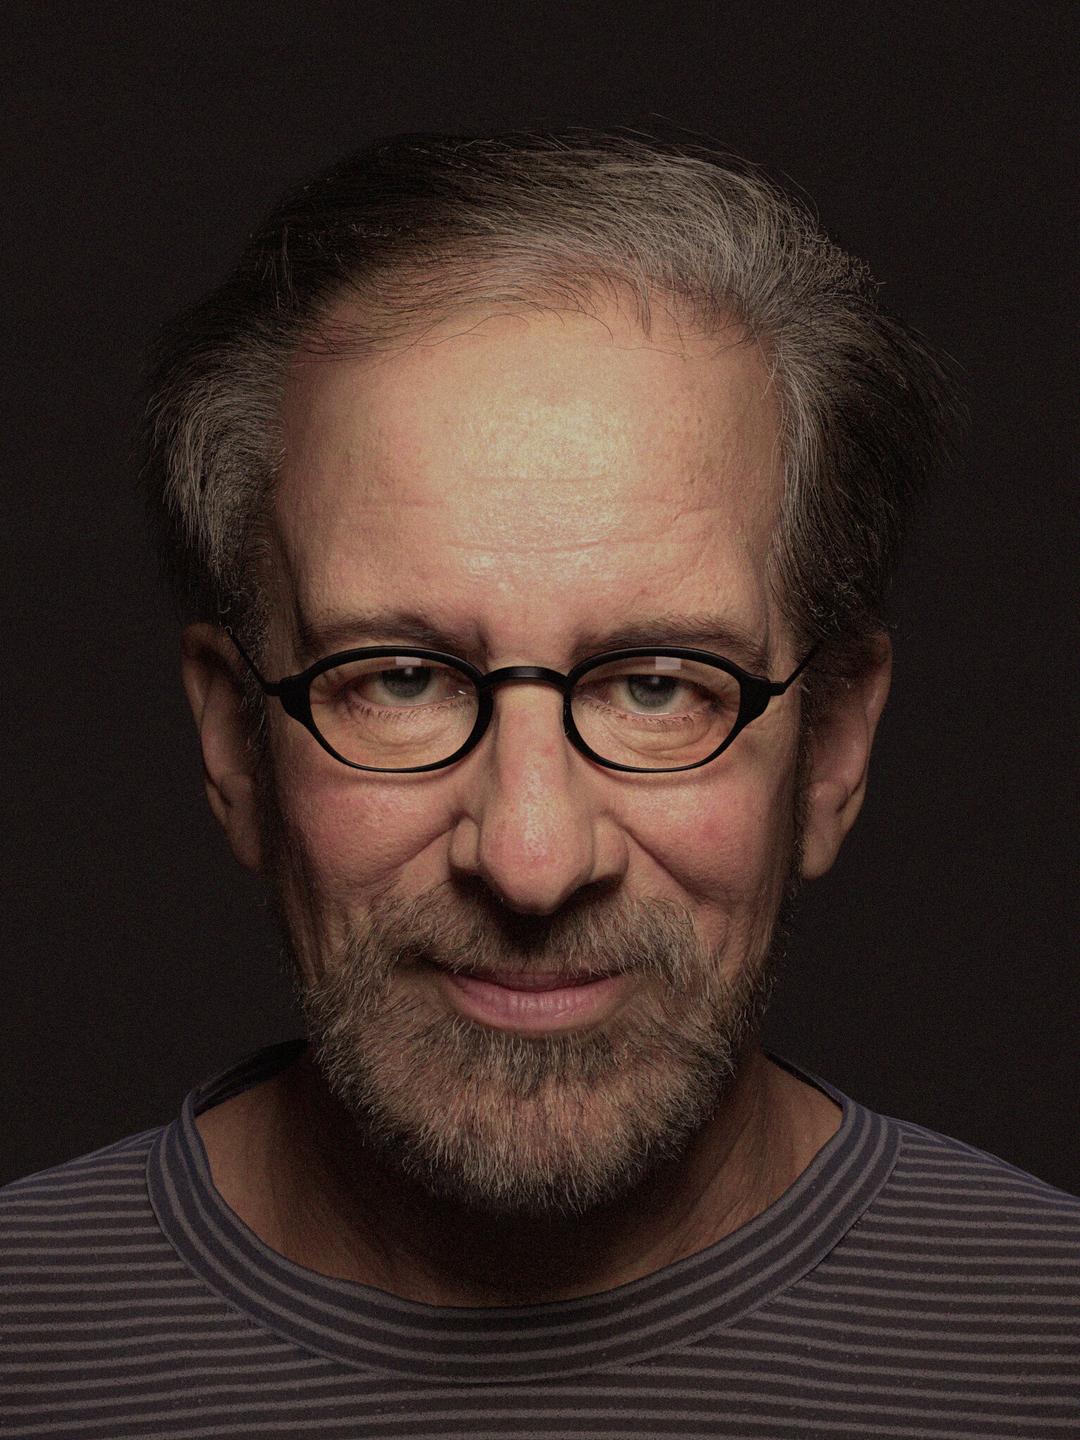 Steven Spielberg who is he